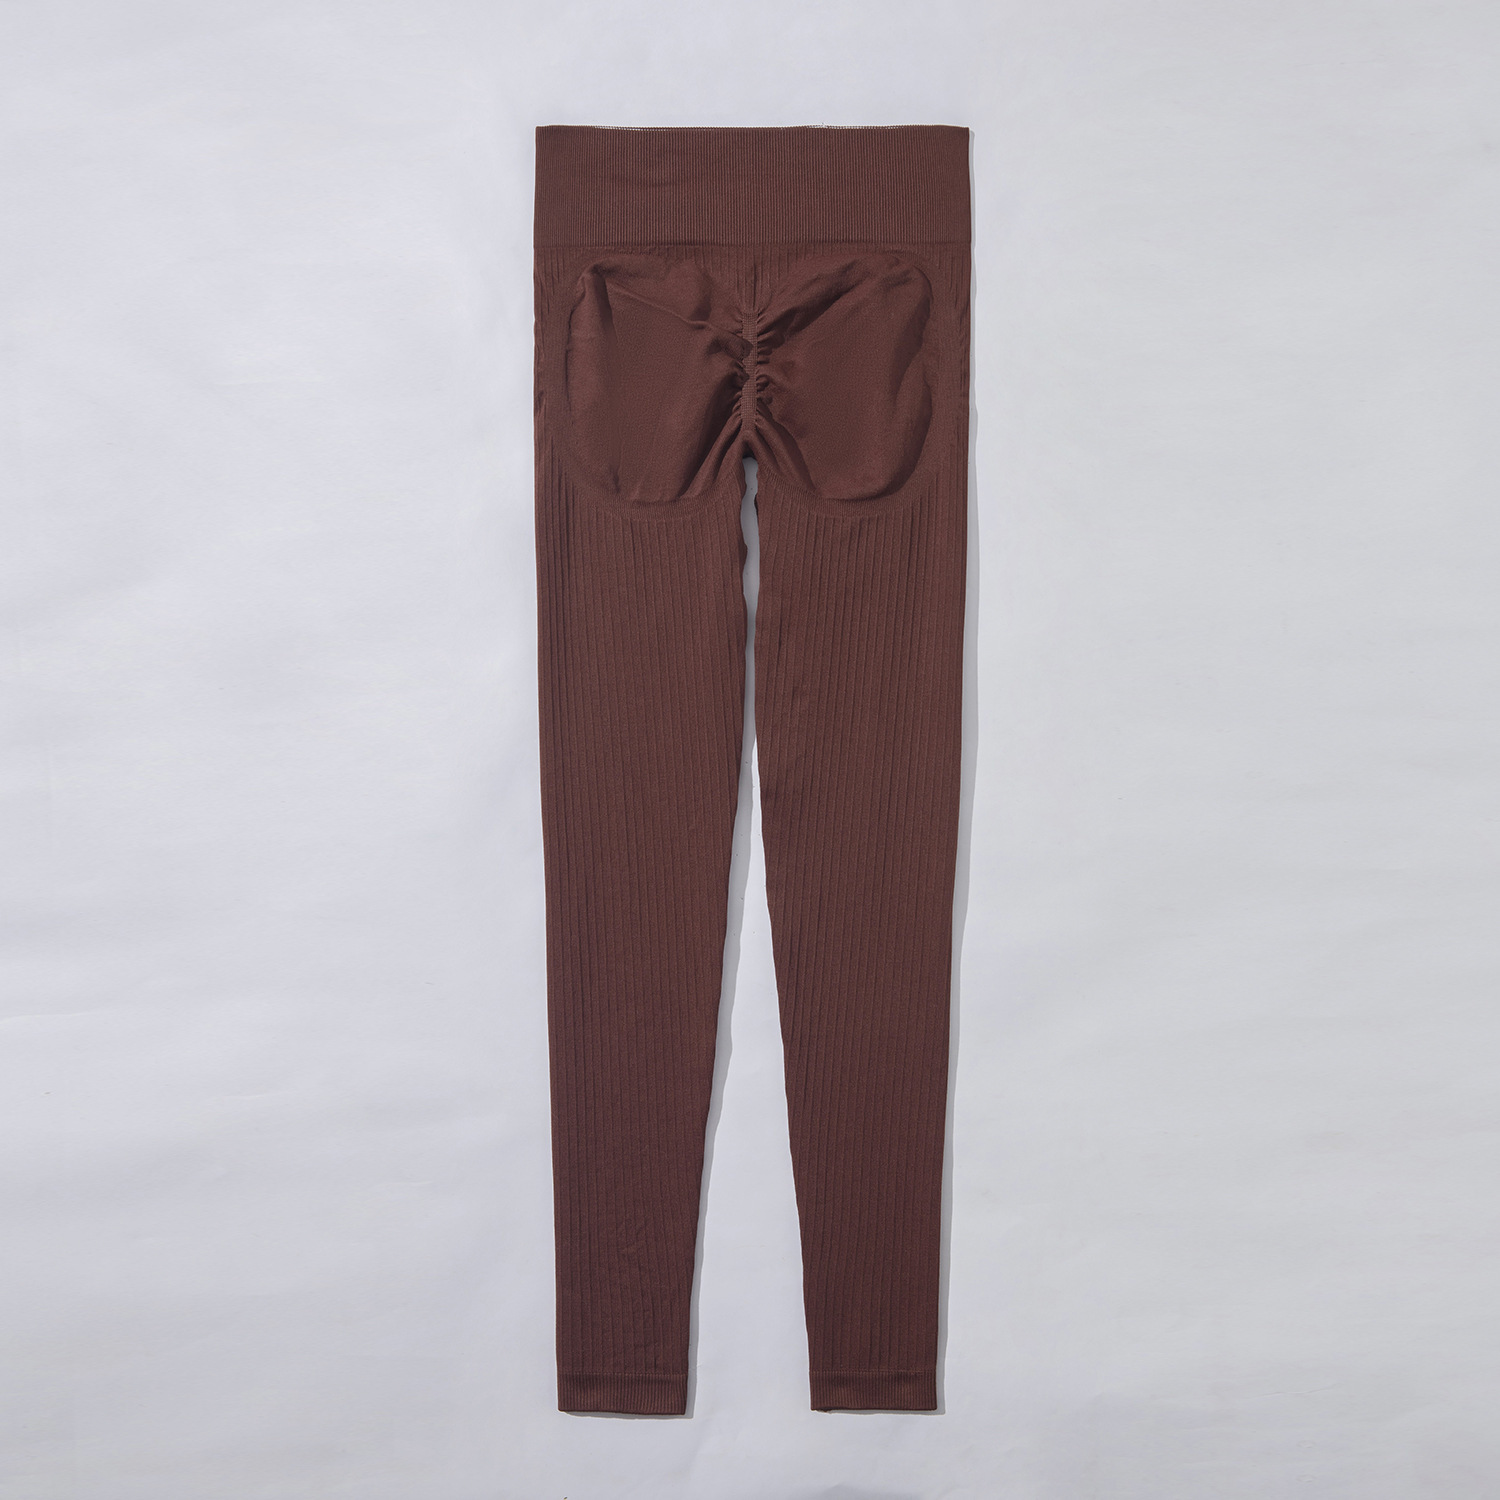 Brown pants